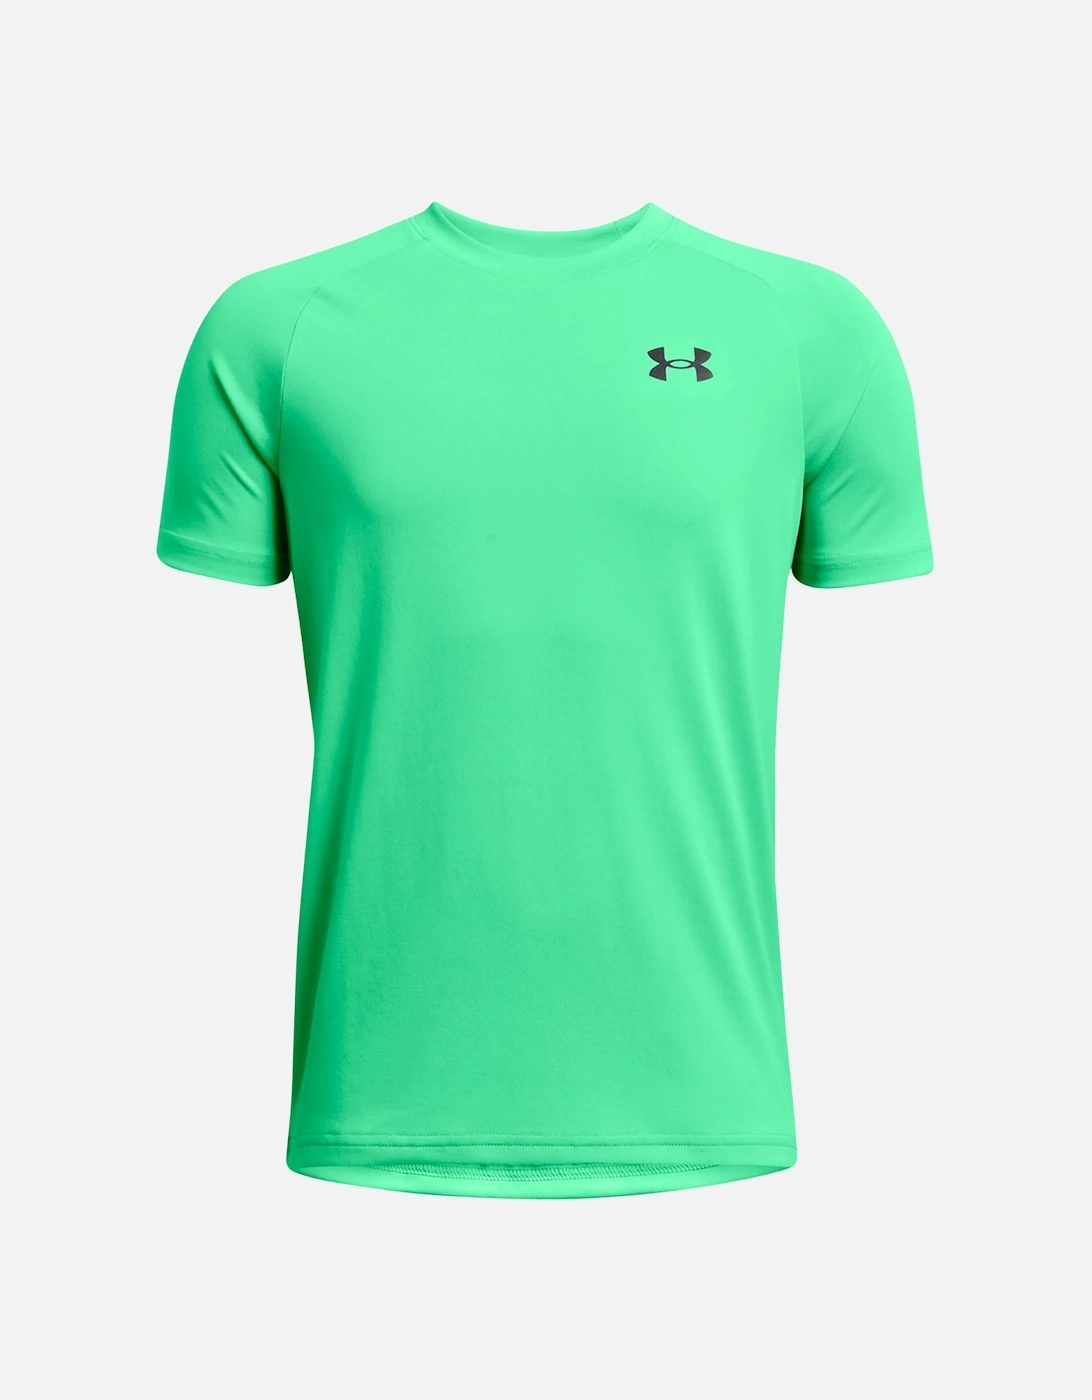 Boys Tech 2.0 T-Shirt (Green), 3 of 2